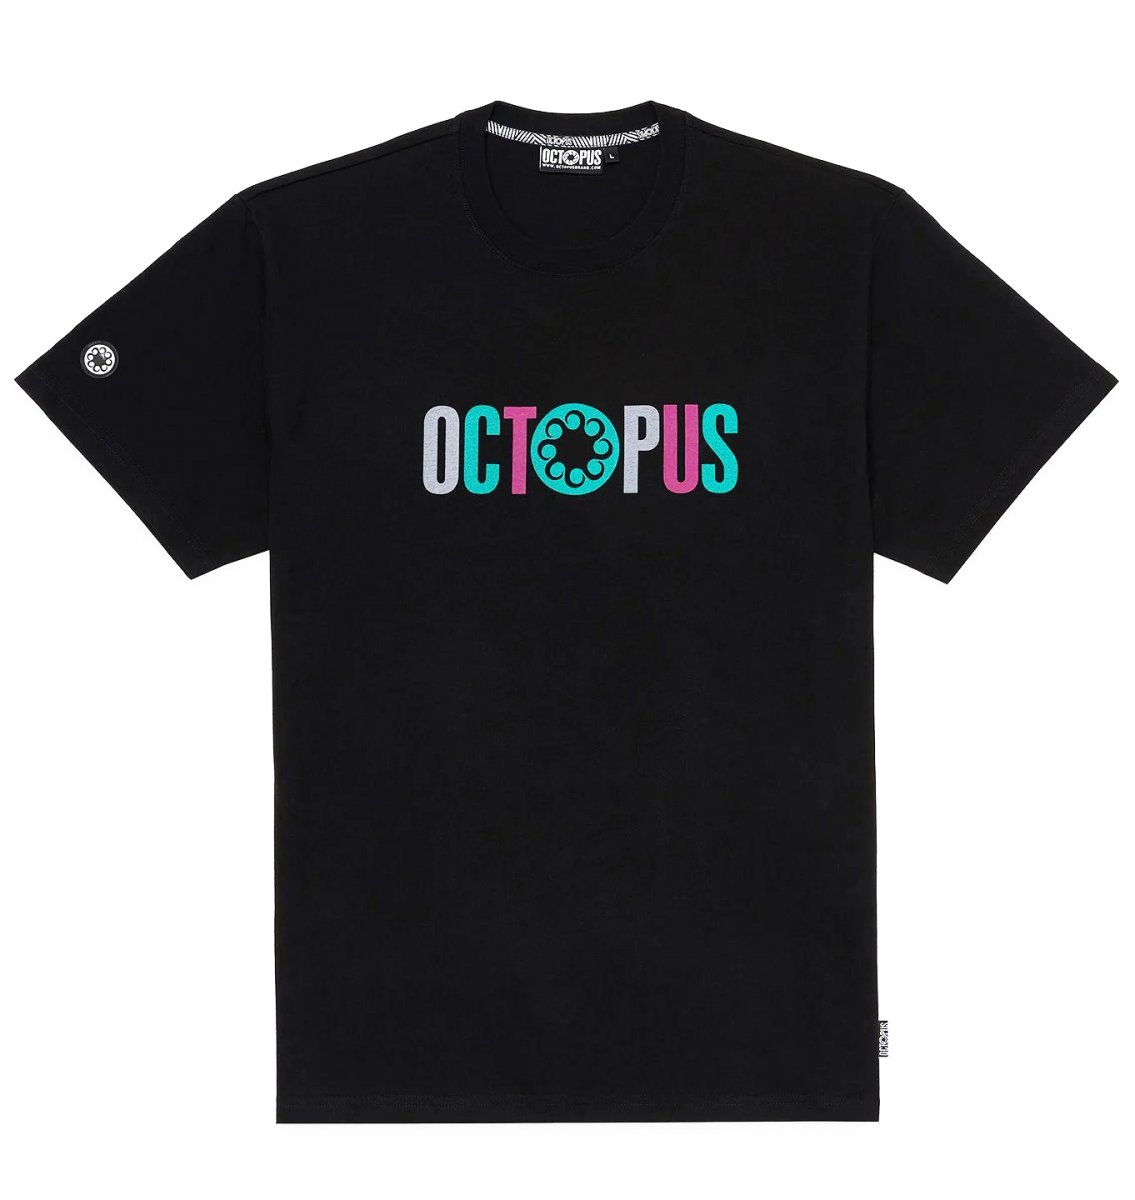 OCTOPUS T-Shirt LETTERZ LOGO Tee Black OCTOPUS BRAND